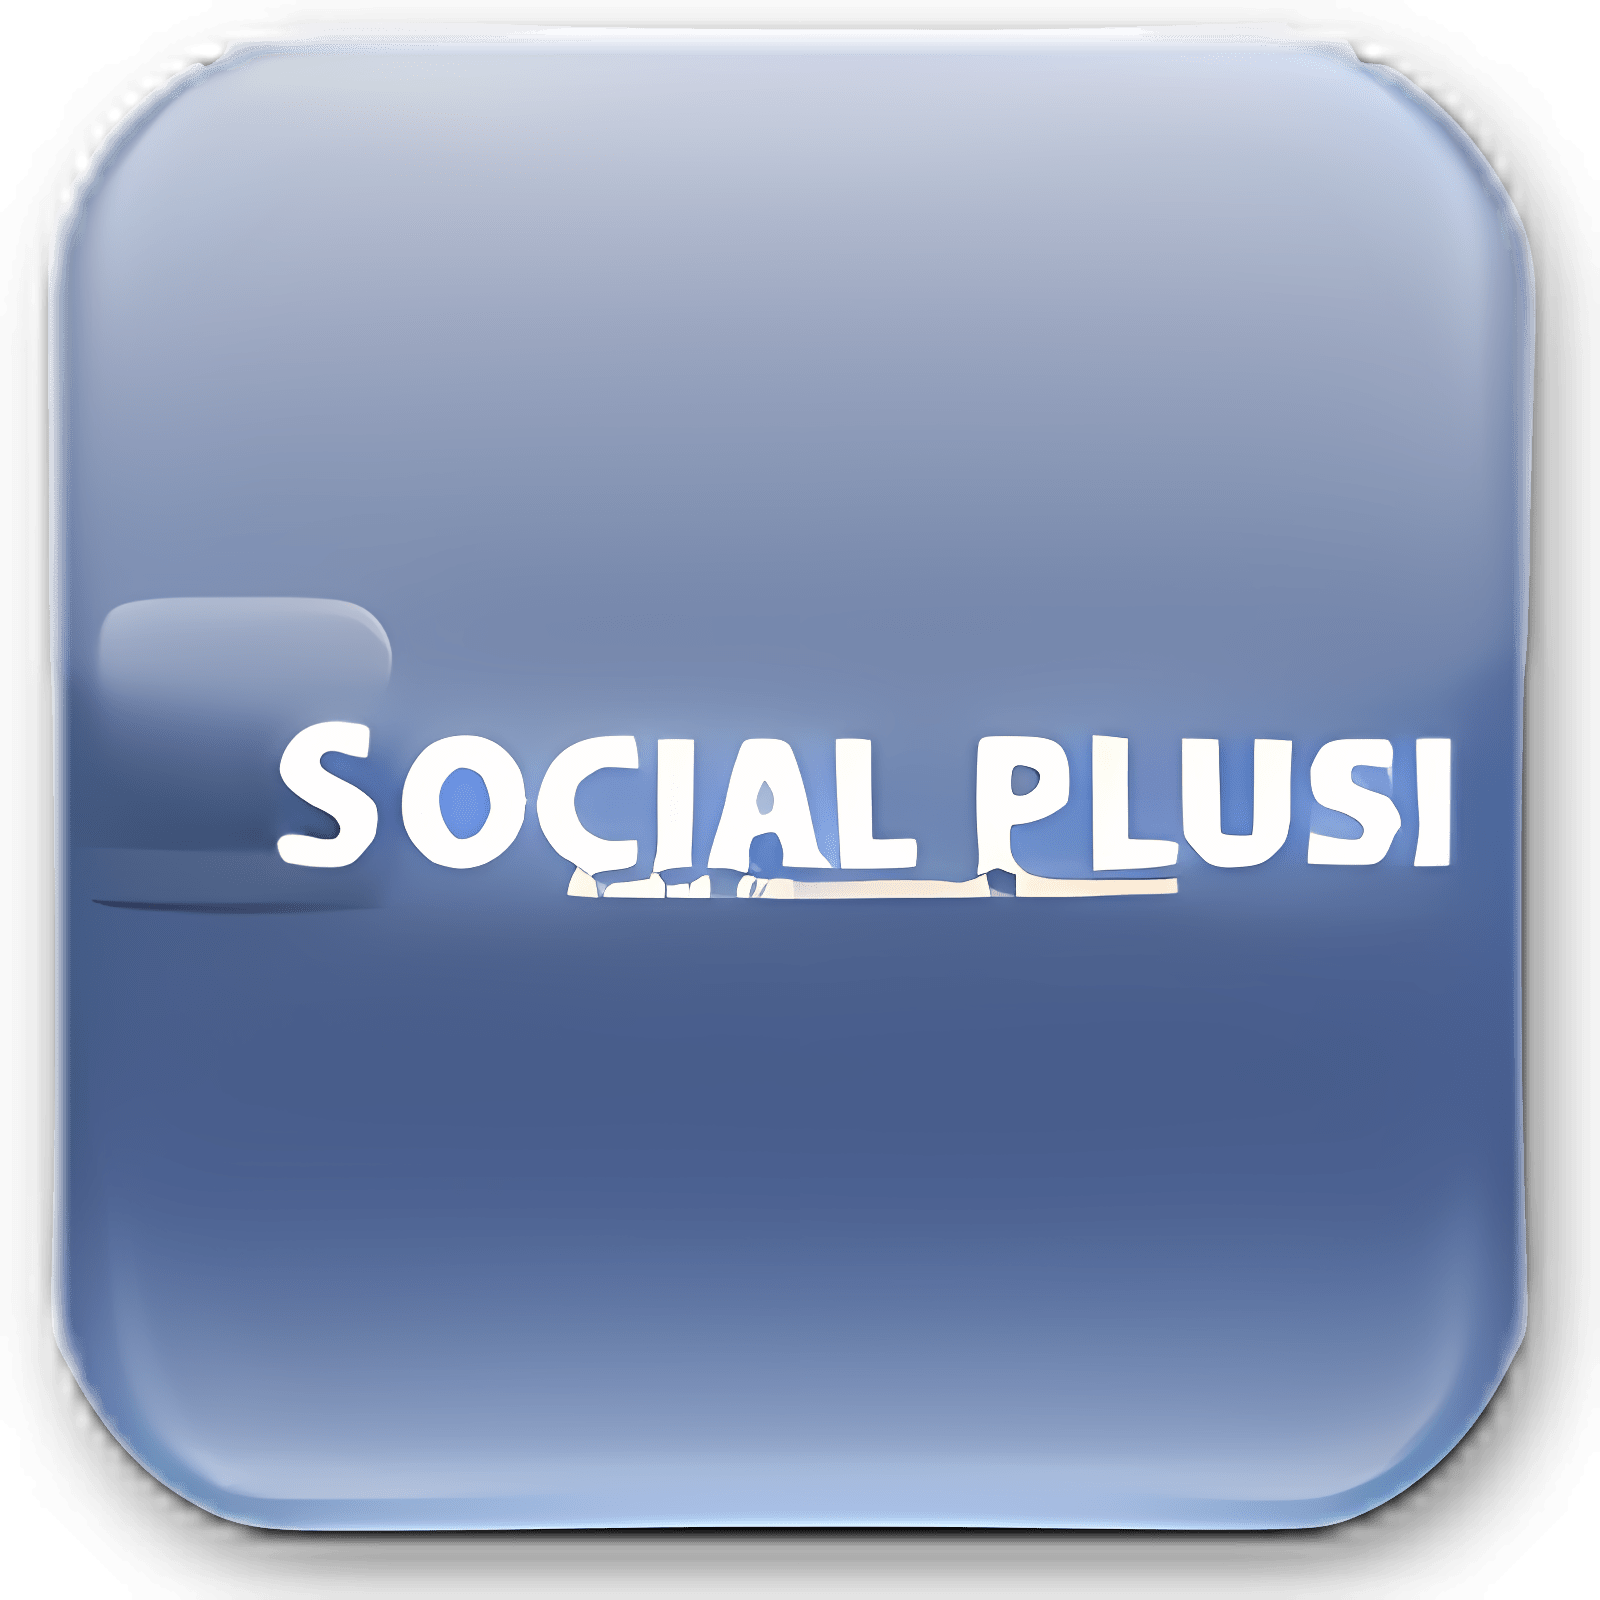 下载 Social Plus! 安装 最新 App 下载程序